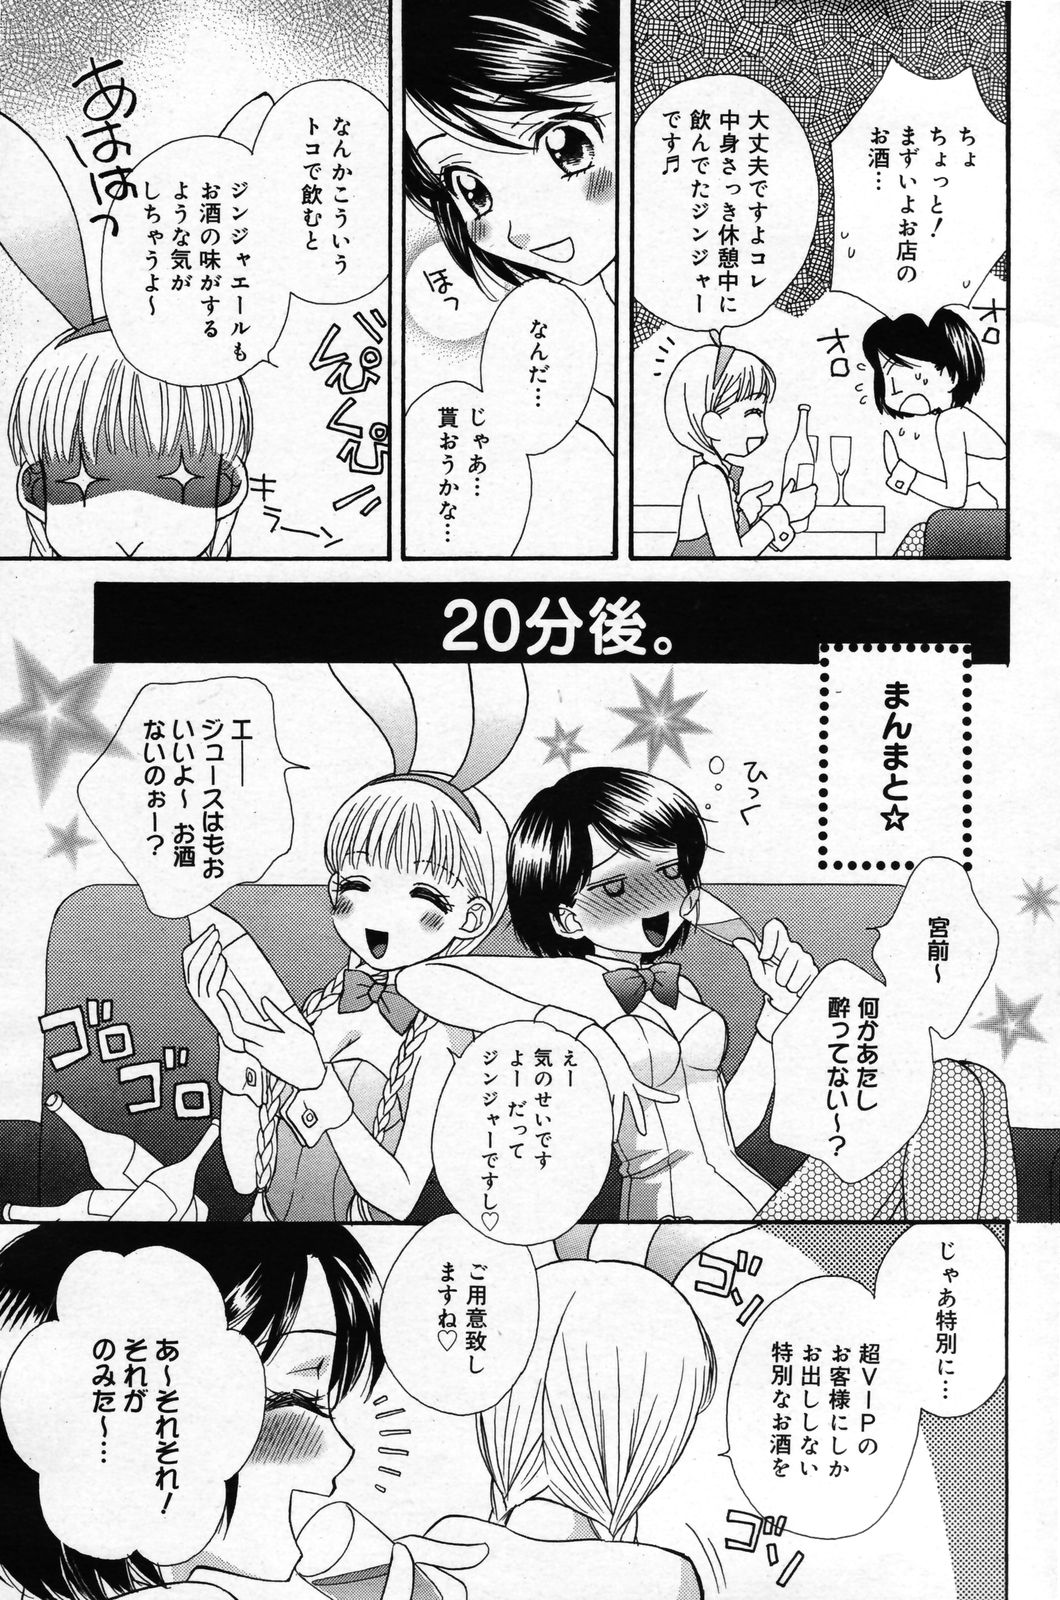 Manga Bangaichi 2007-05 漫画ばんがいち 2007年5月号